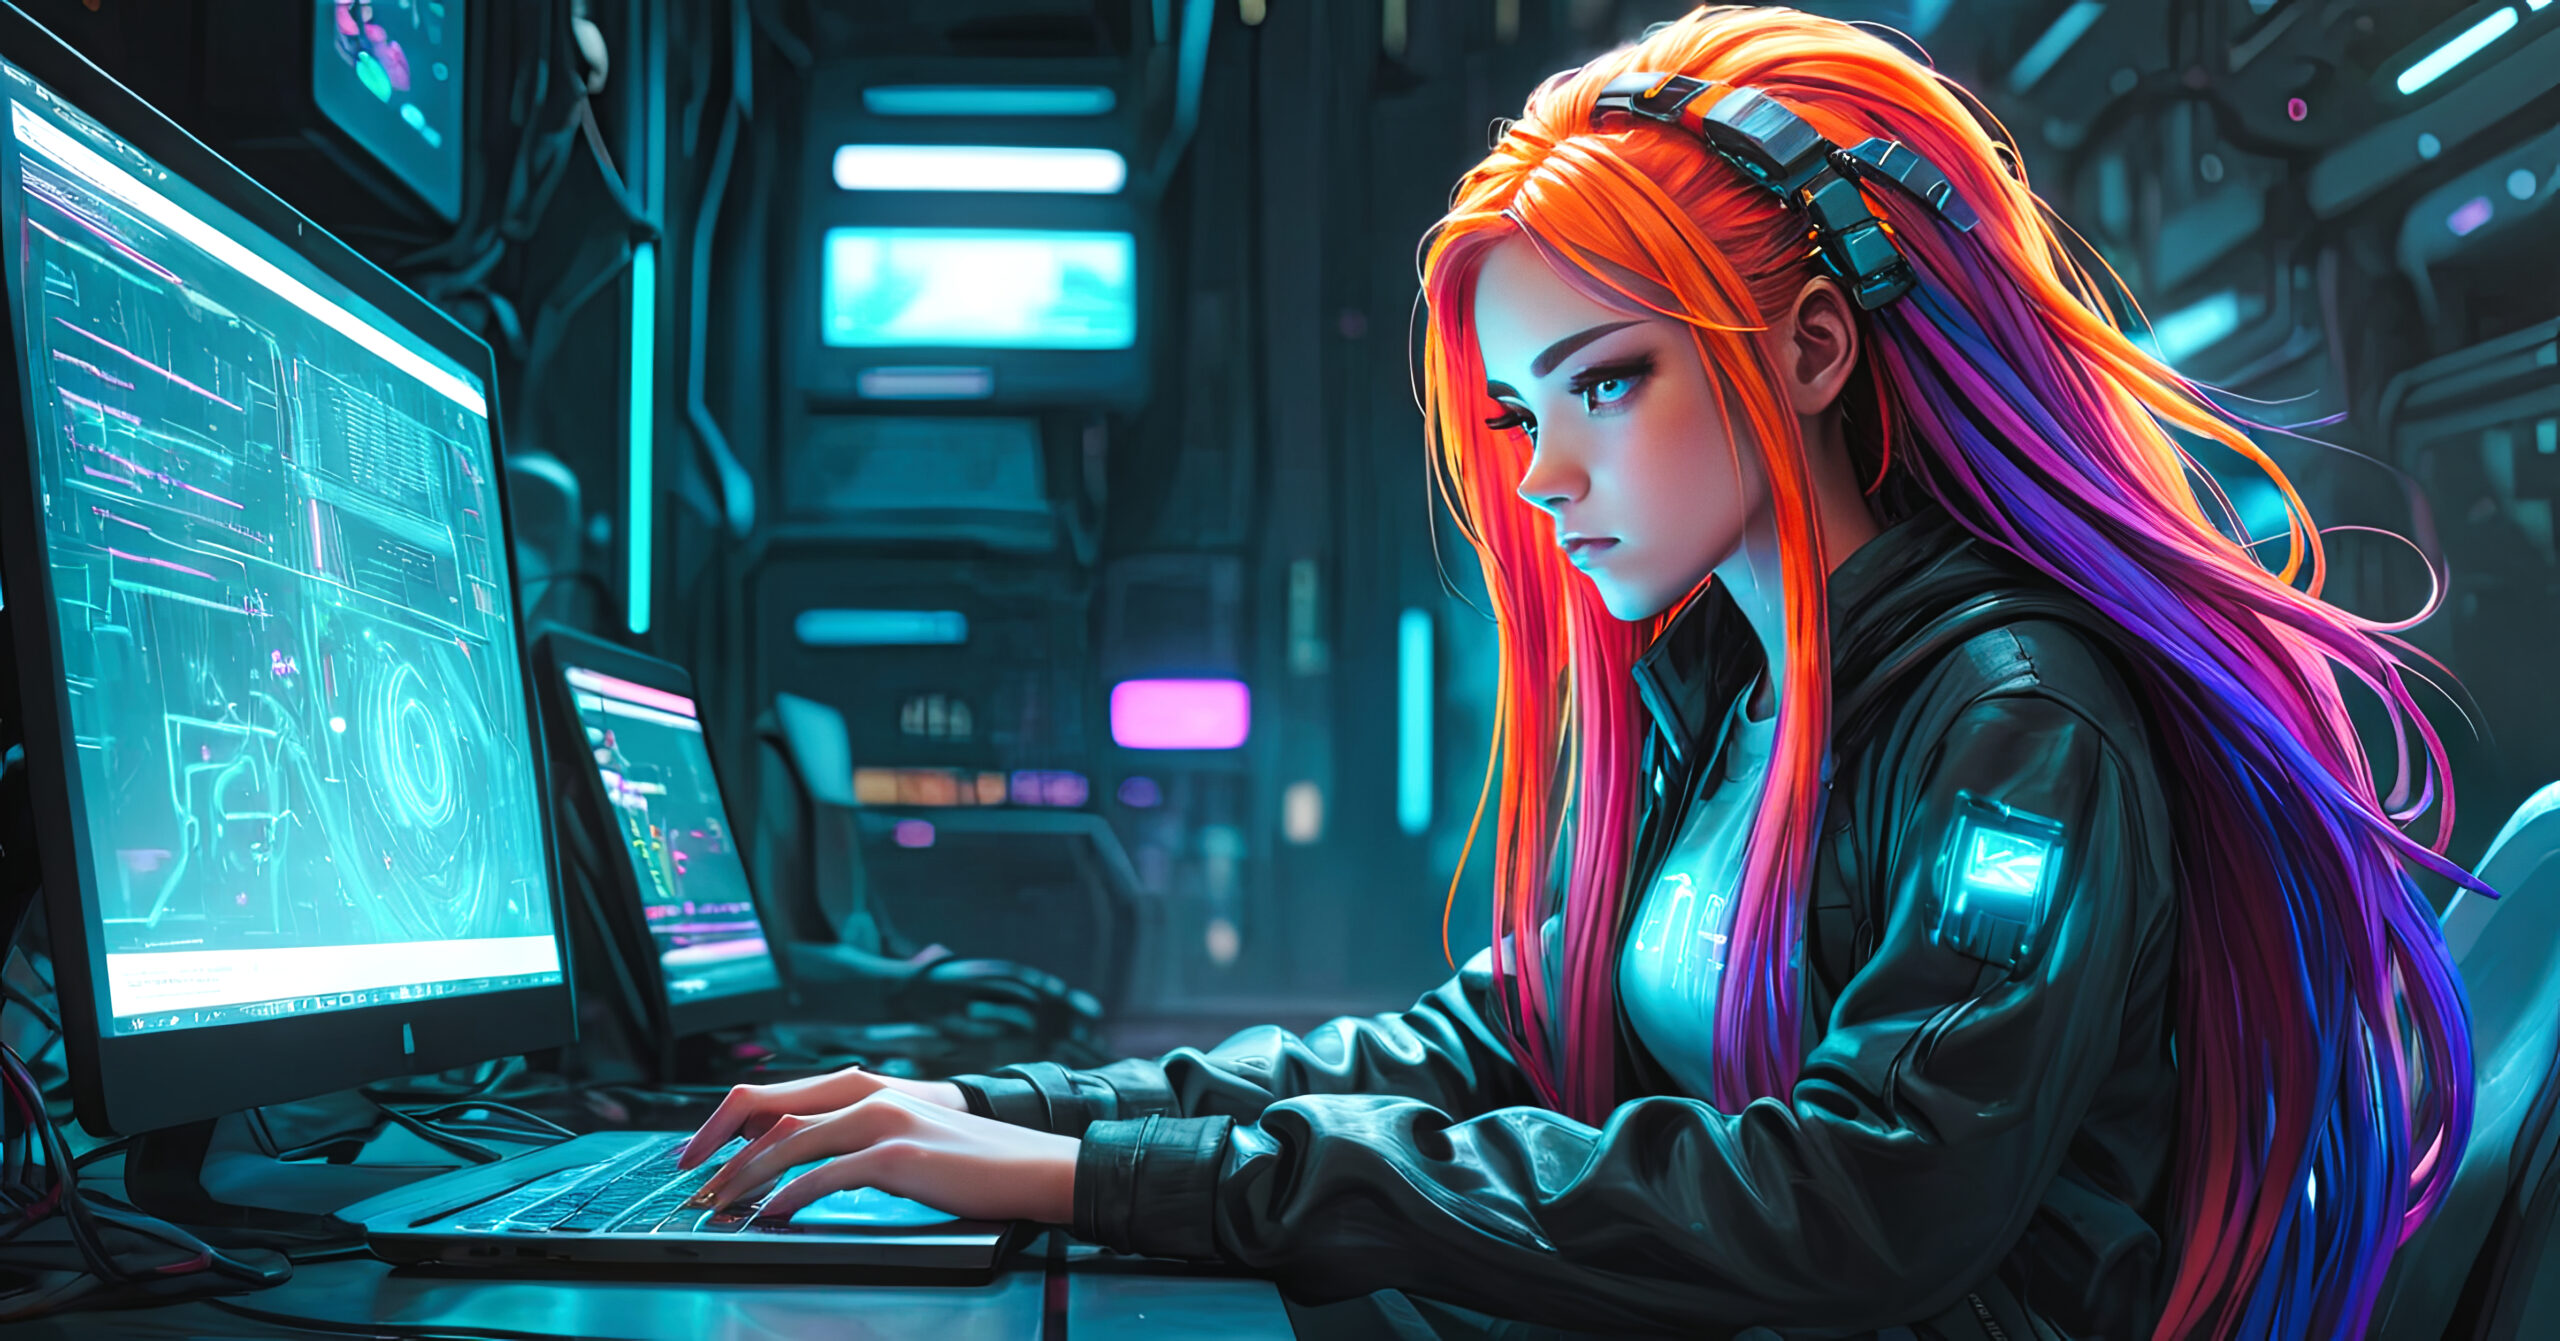 Eine Frau mit mehrfarbigem Haar, das von leuchtendem Orange zu tiefem Violett übergeht, sitzt in einem futuristischen Raum voller Bildschirme, auf denen komplexe Diagramme und Codezeilen zu sehen sind. Sie trägt Kopfhörer und ist konzentriert auf ihren Laptop gerichtet, auf dem sie die PyCharm Community Edition installiert, eine beliebte Entwicklungsumgebung für Python-Programmierung. Das leuchtende Ambiente rund um sie strahlt die Intensität und Fokussierung aus, die sie in ihre Programmierarbeit legt.